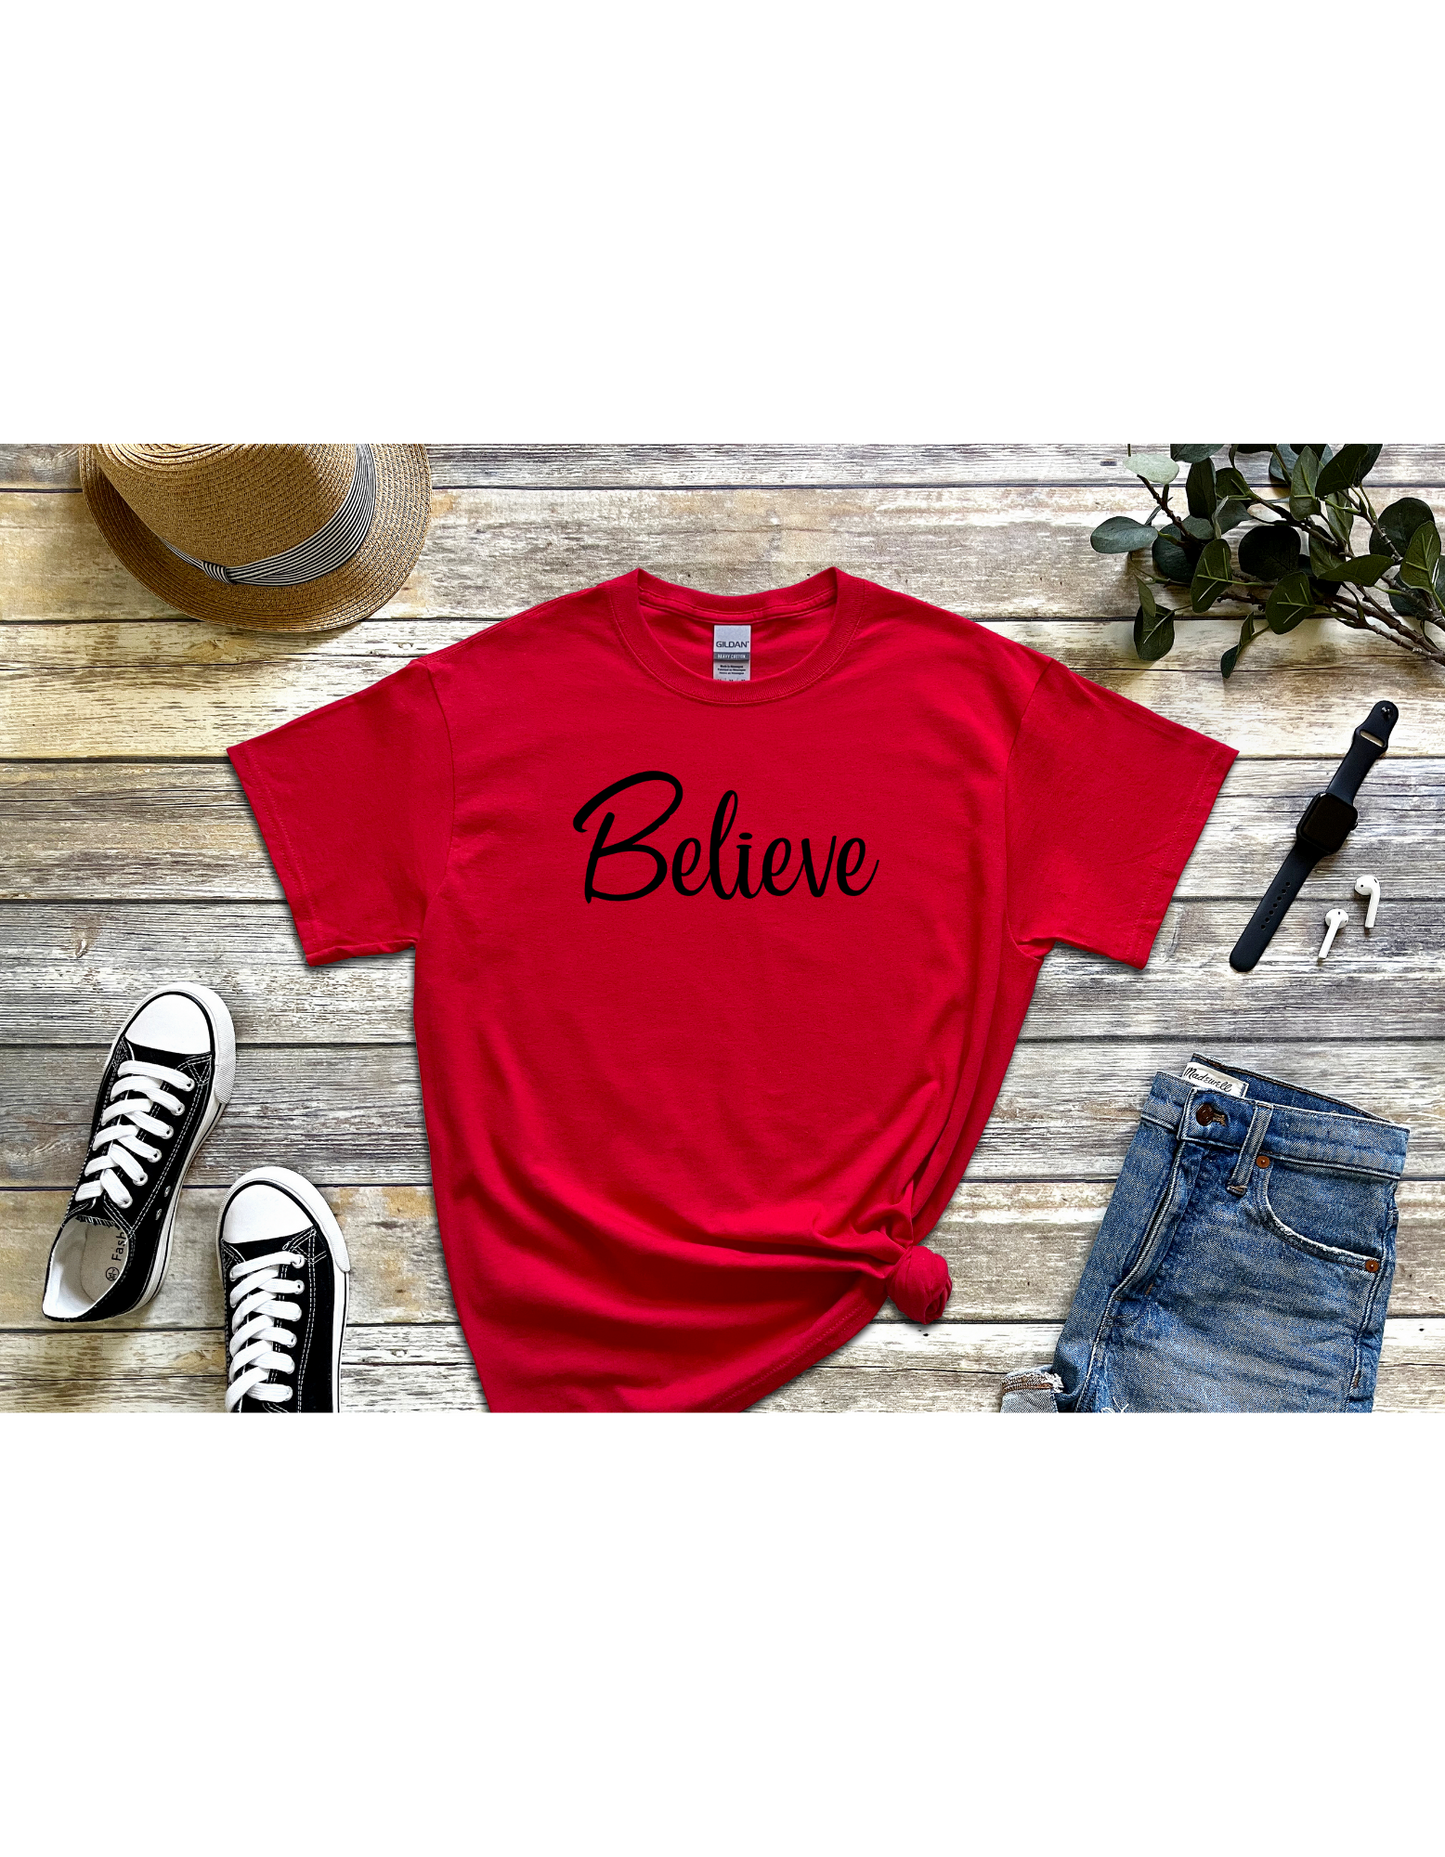 Believe Motivational Shirt, Inspirational Tee, Affirmation Shirt, Christian Shirt